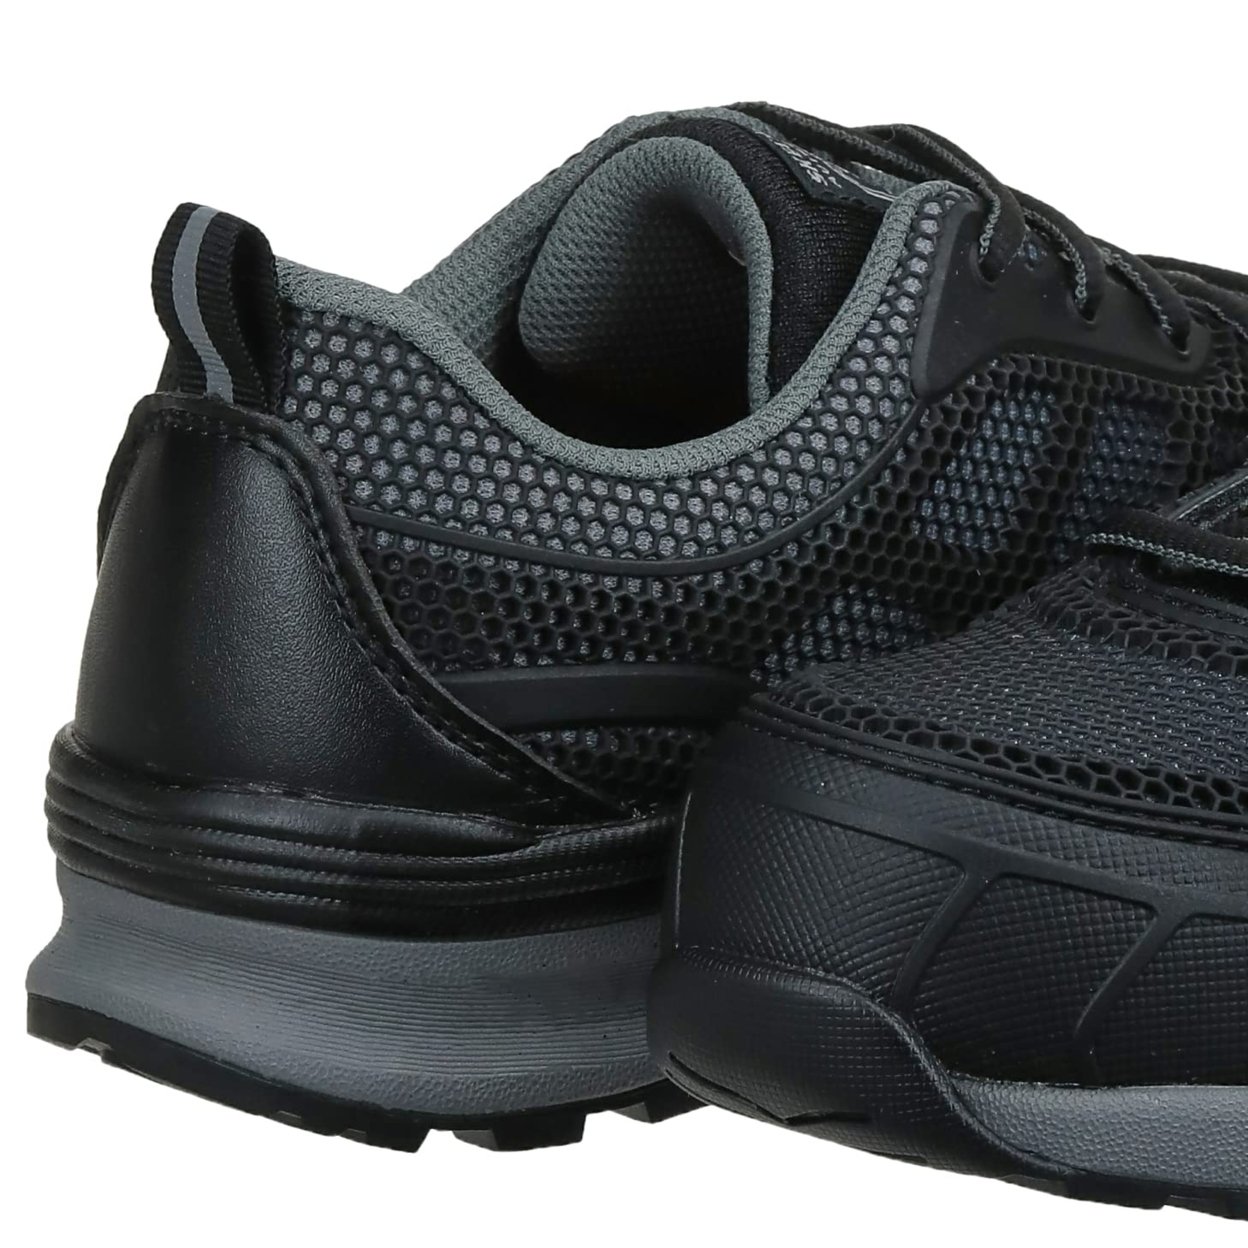 Skechers Women's Bulklin-Lyndale Industrial Shoe BLACK/GRAY - BLACK/GRAY, 7 Wide